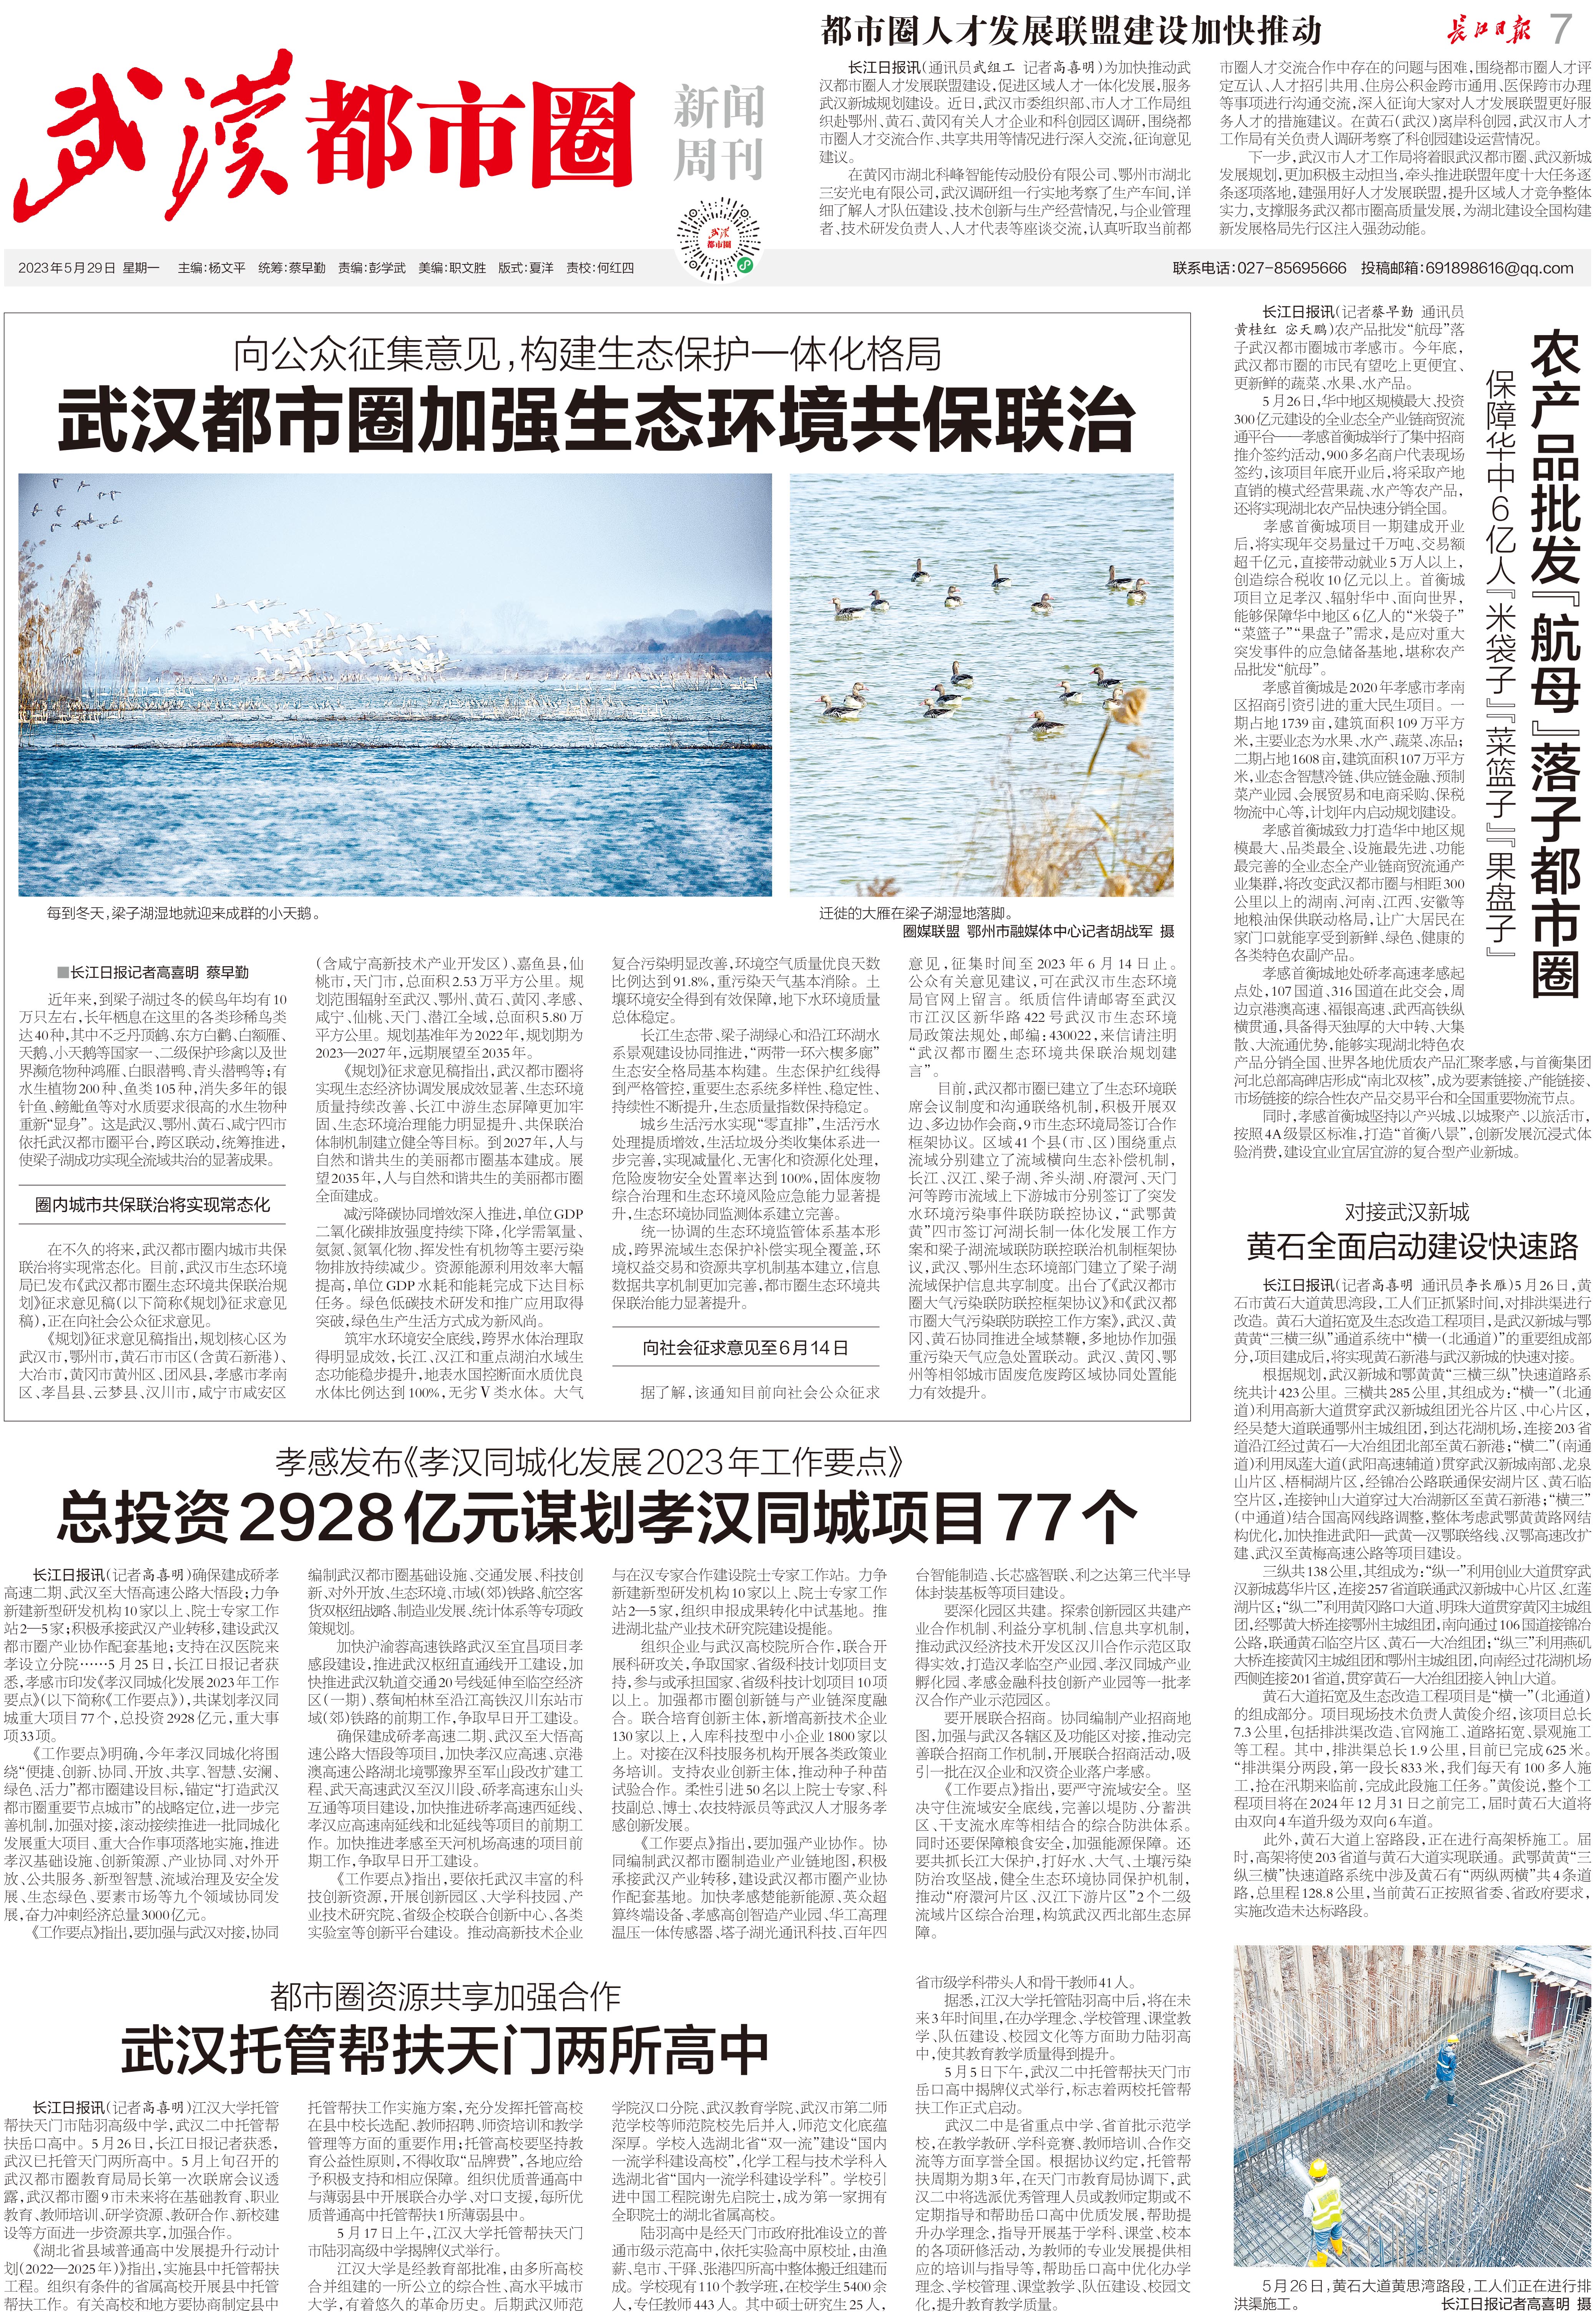 长江日报武汉都市圈新闻周刊2023年5月29日第57期报纸版面